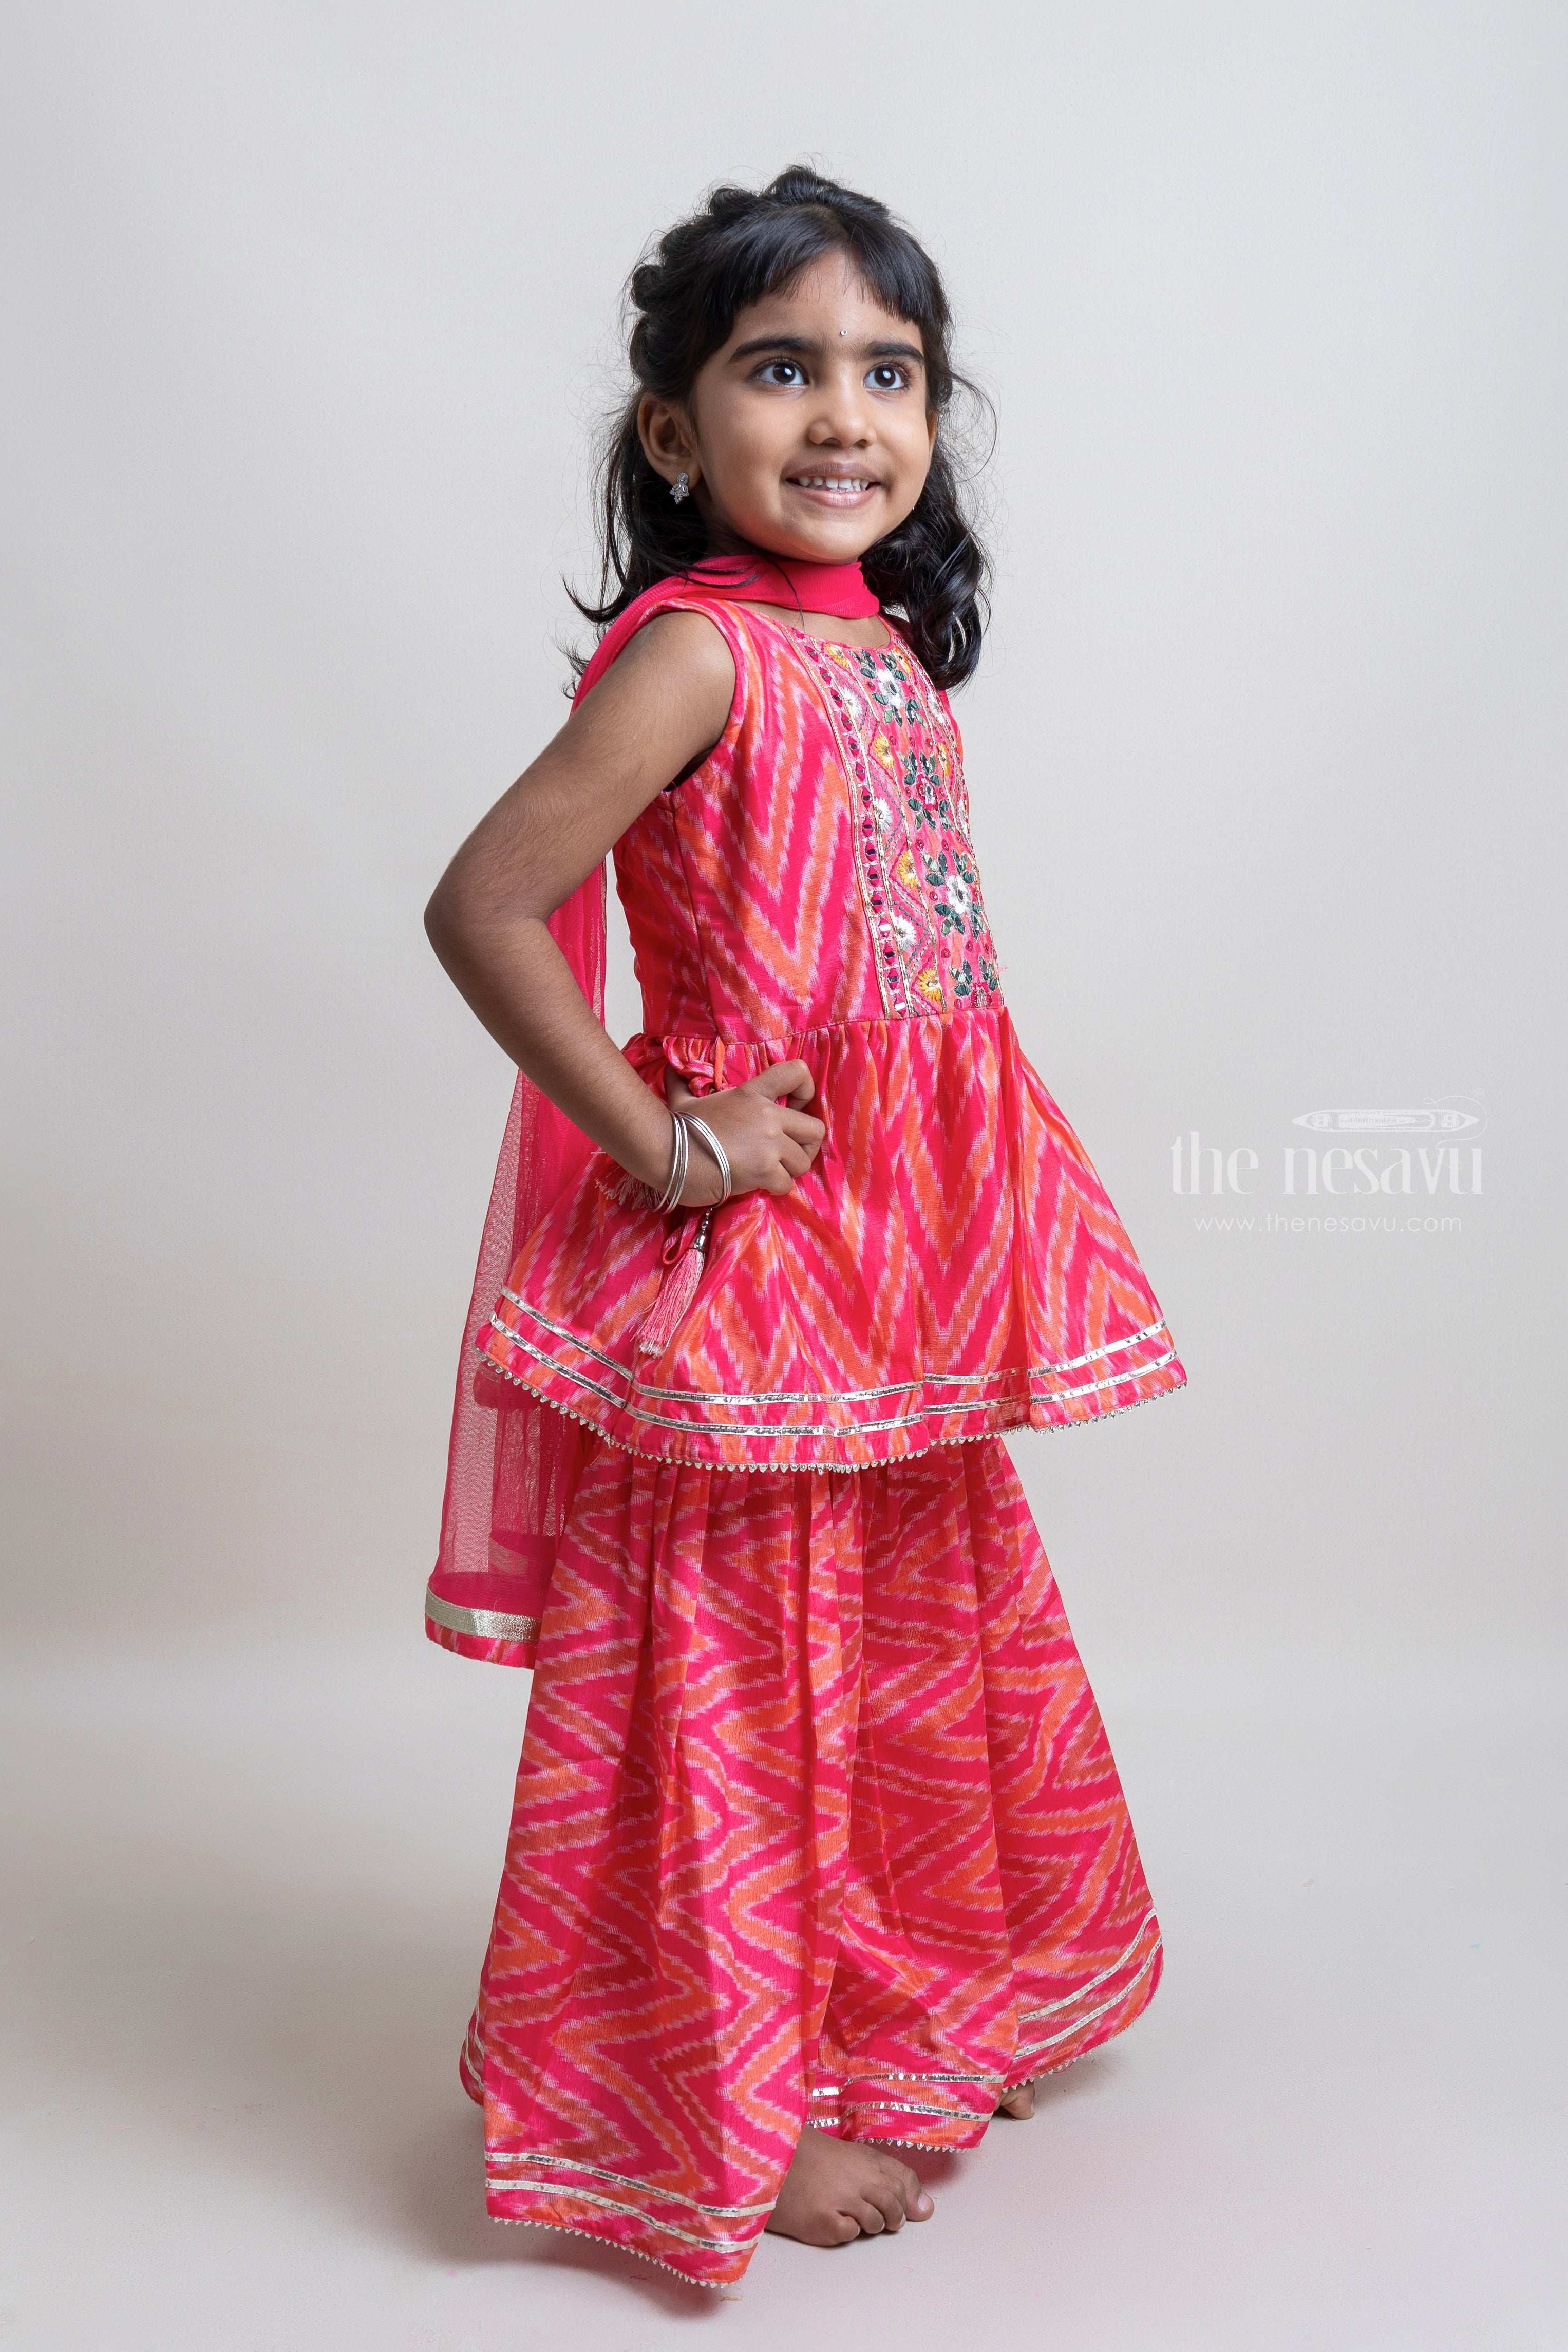 trending dresses for girls Images • Neetu Yadav (@0rapunzel) on ShareChat